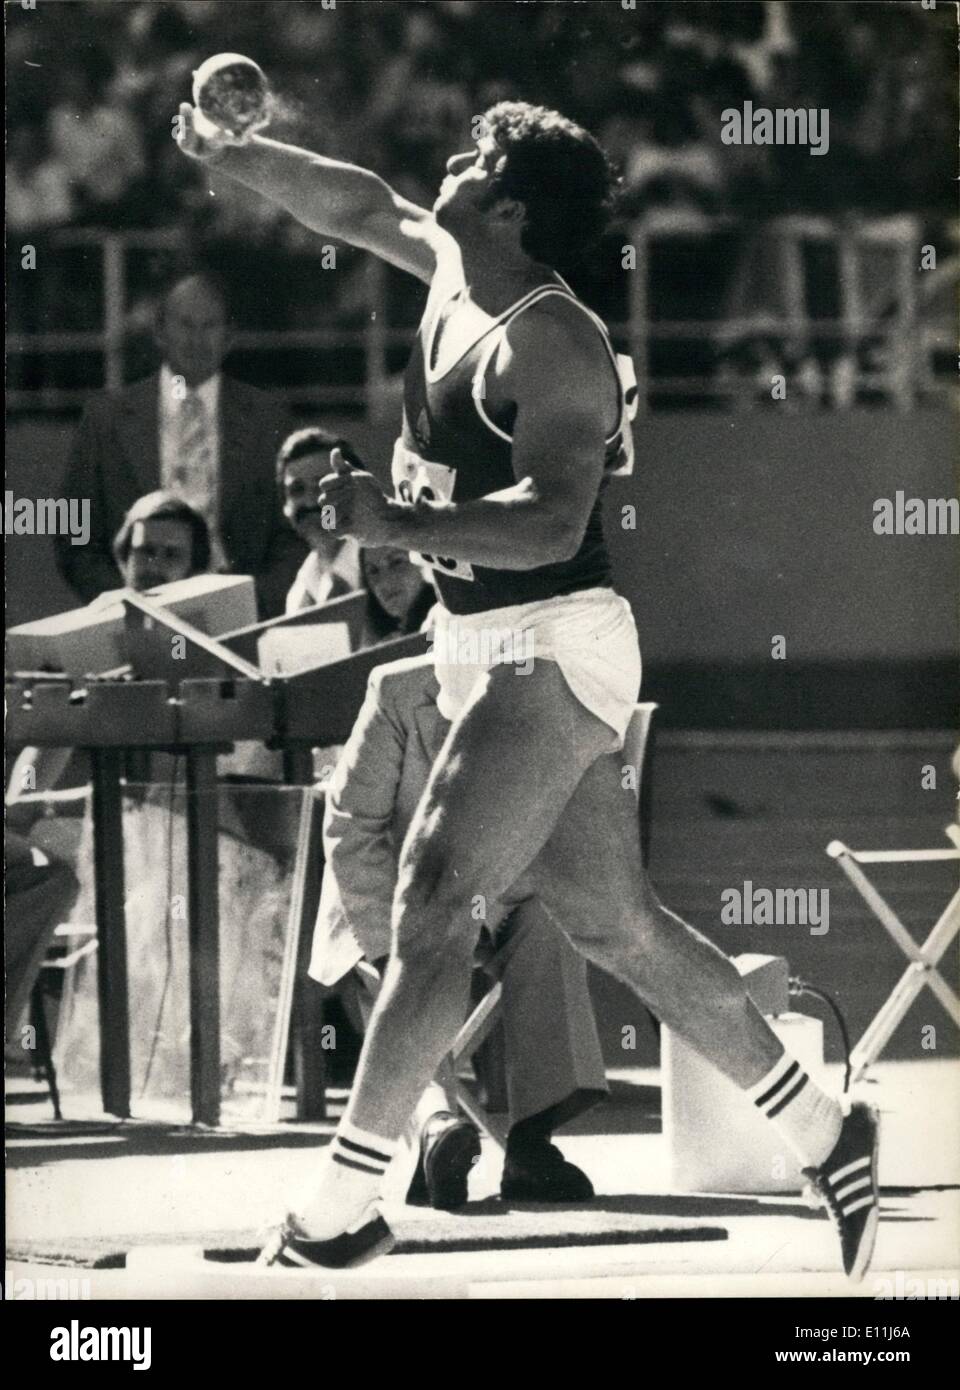 Lug. 07, 1978 - Udo Beyer, il tedesco shot-put thrower ha stabilito un nuovo record del mondo la scorsa notte da gettare il colpo messo 22.15 metri. Foto Stock